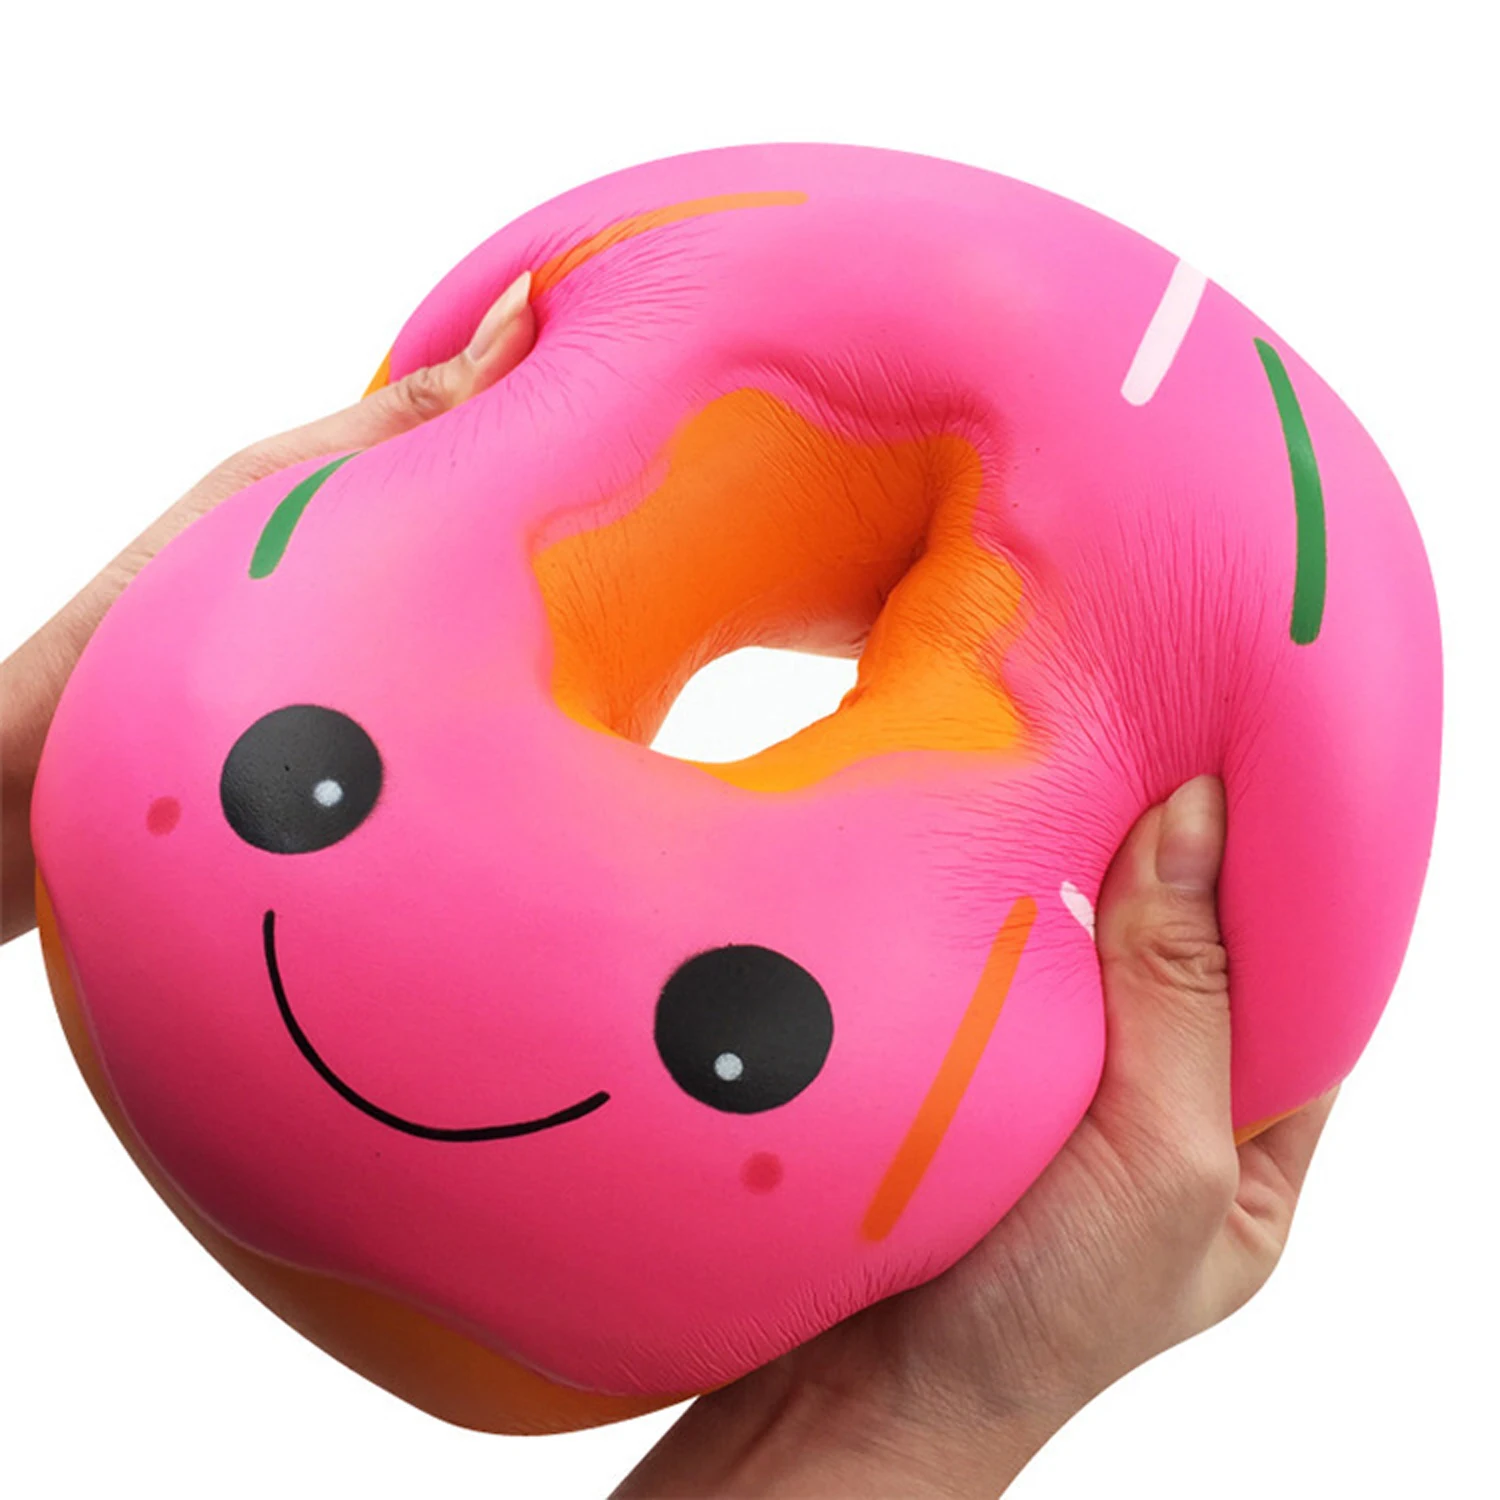 Besegad мягкая мягкое милое каваи большой пончик медленно поднимающаяся игрушка для детей взрослых снимает стресс беспокойство украшение